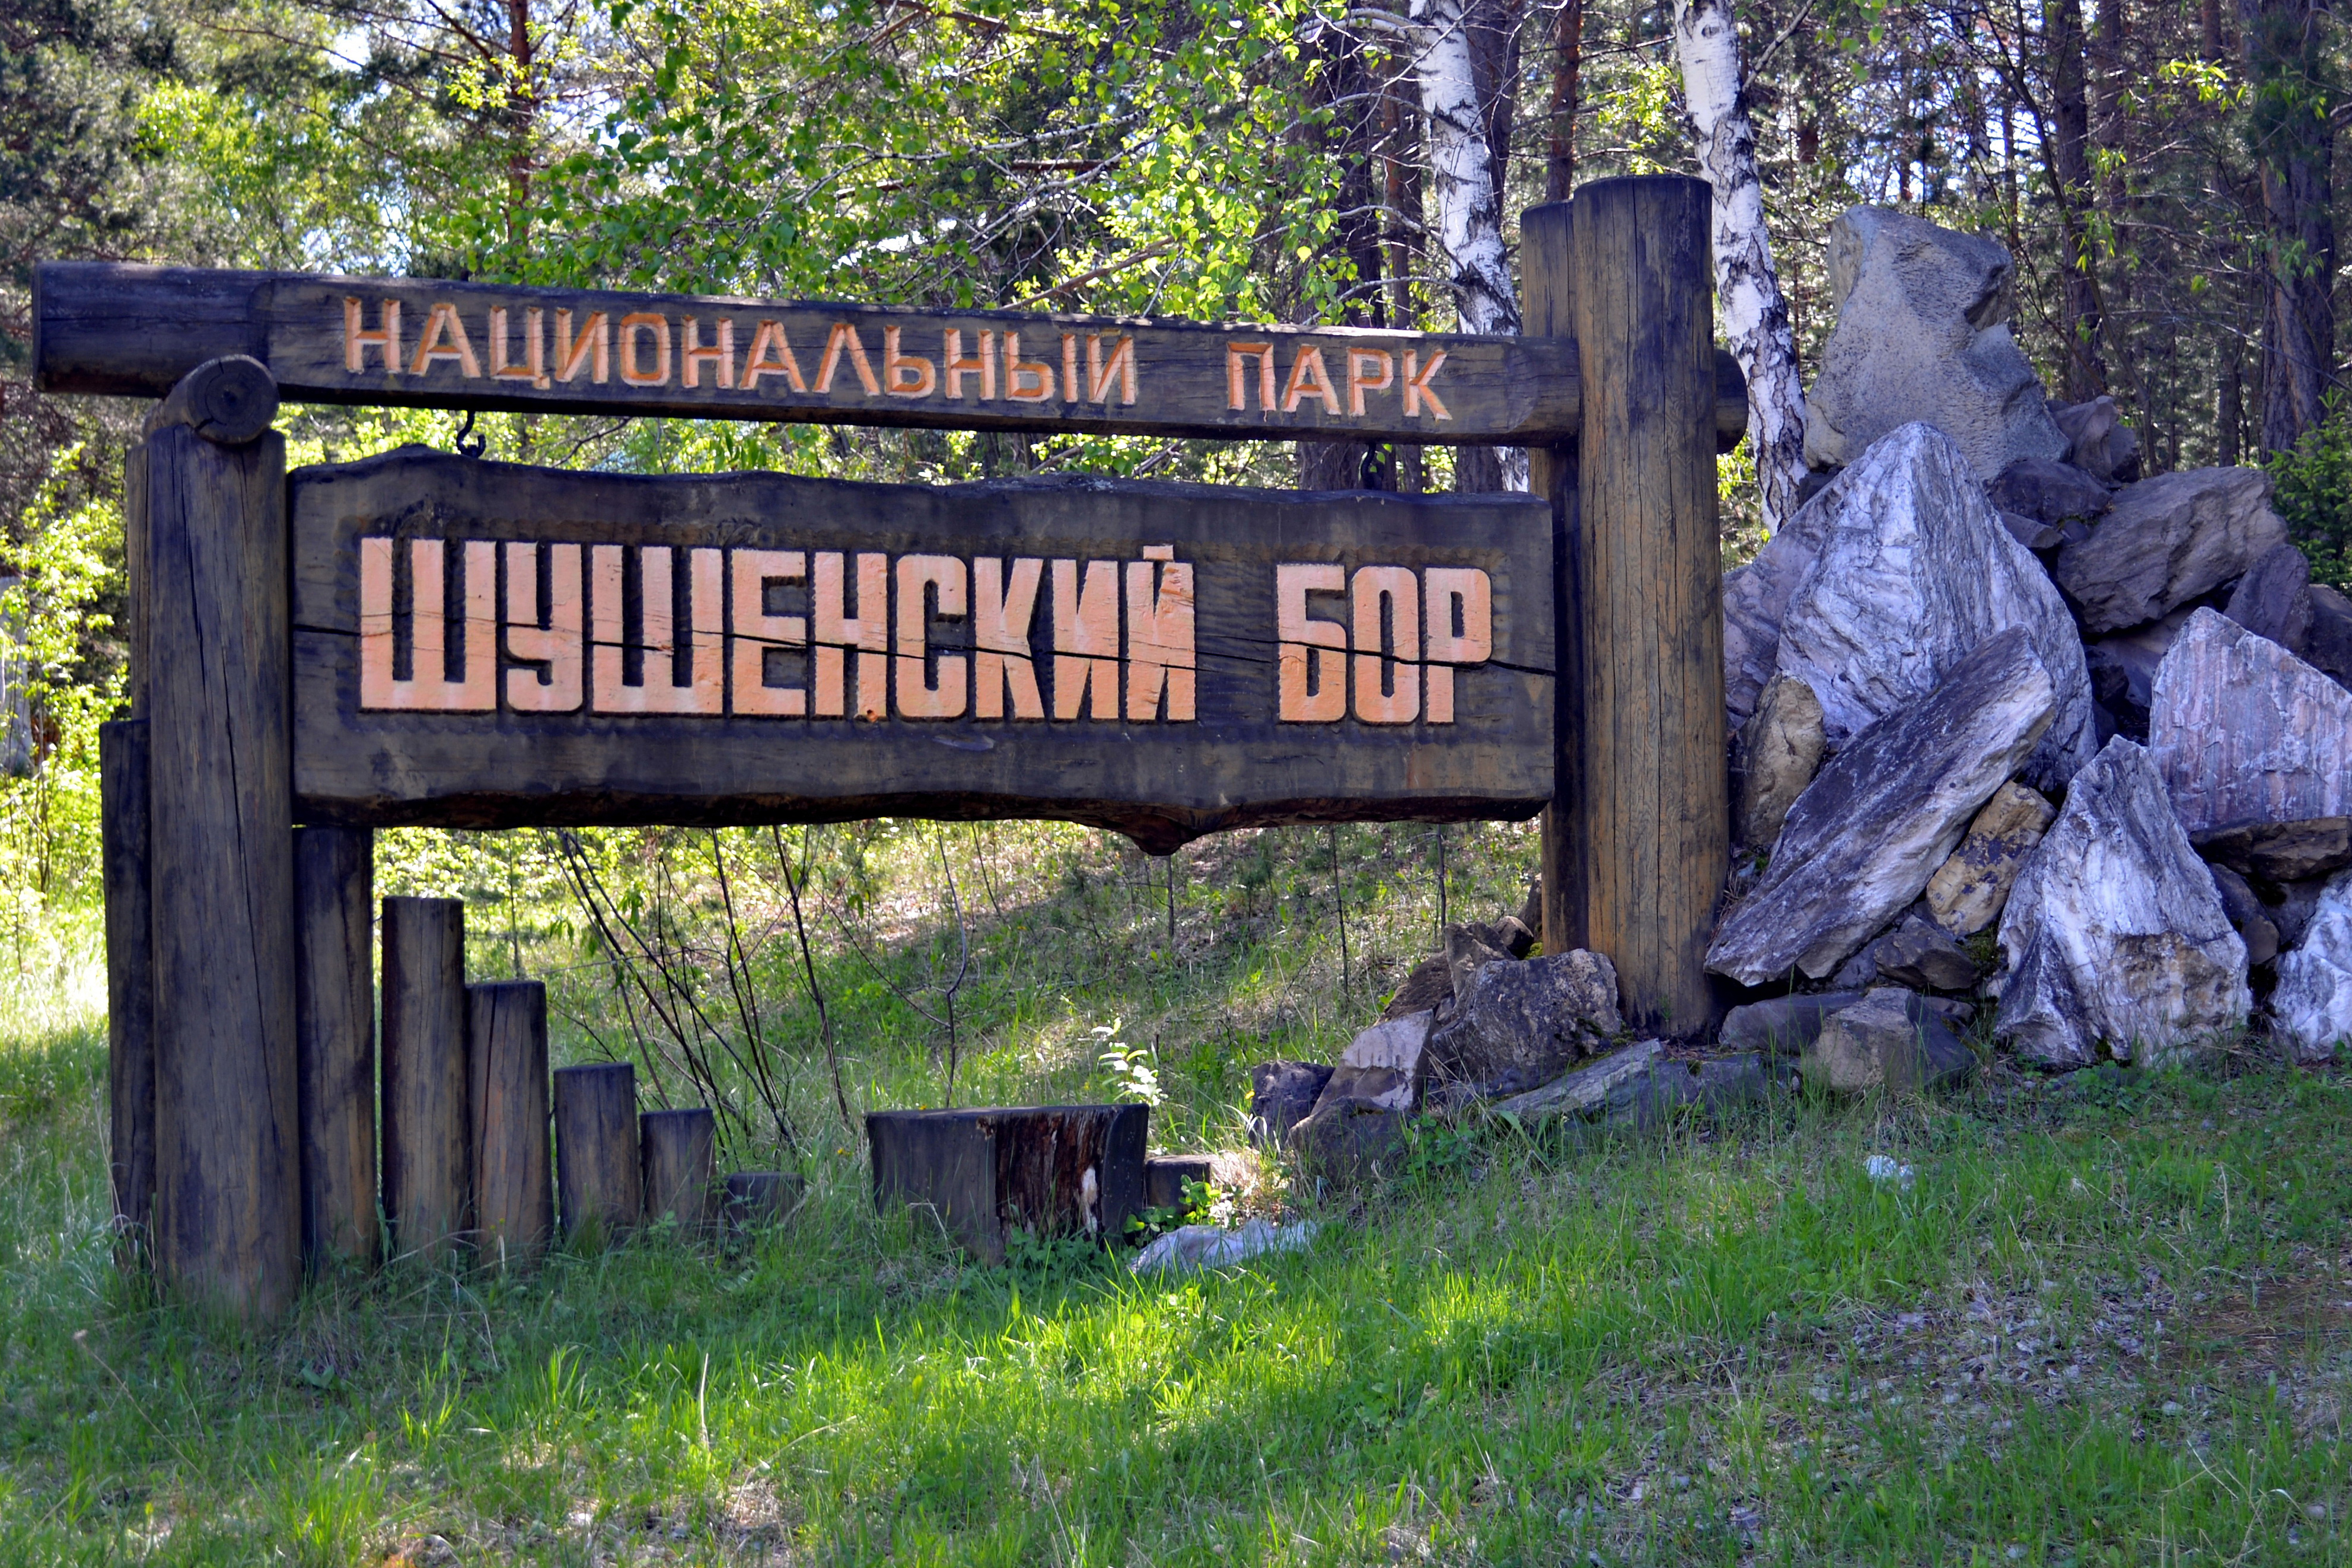 Шушенский Бор национальный парк